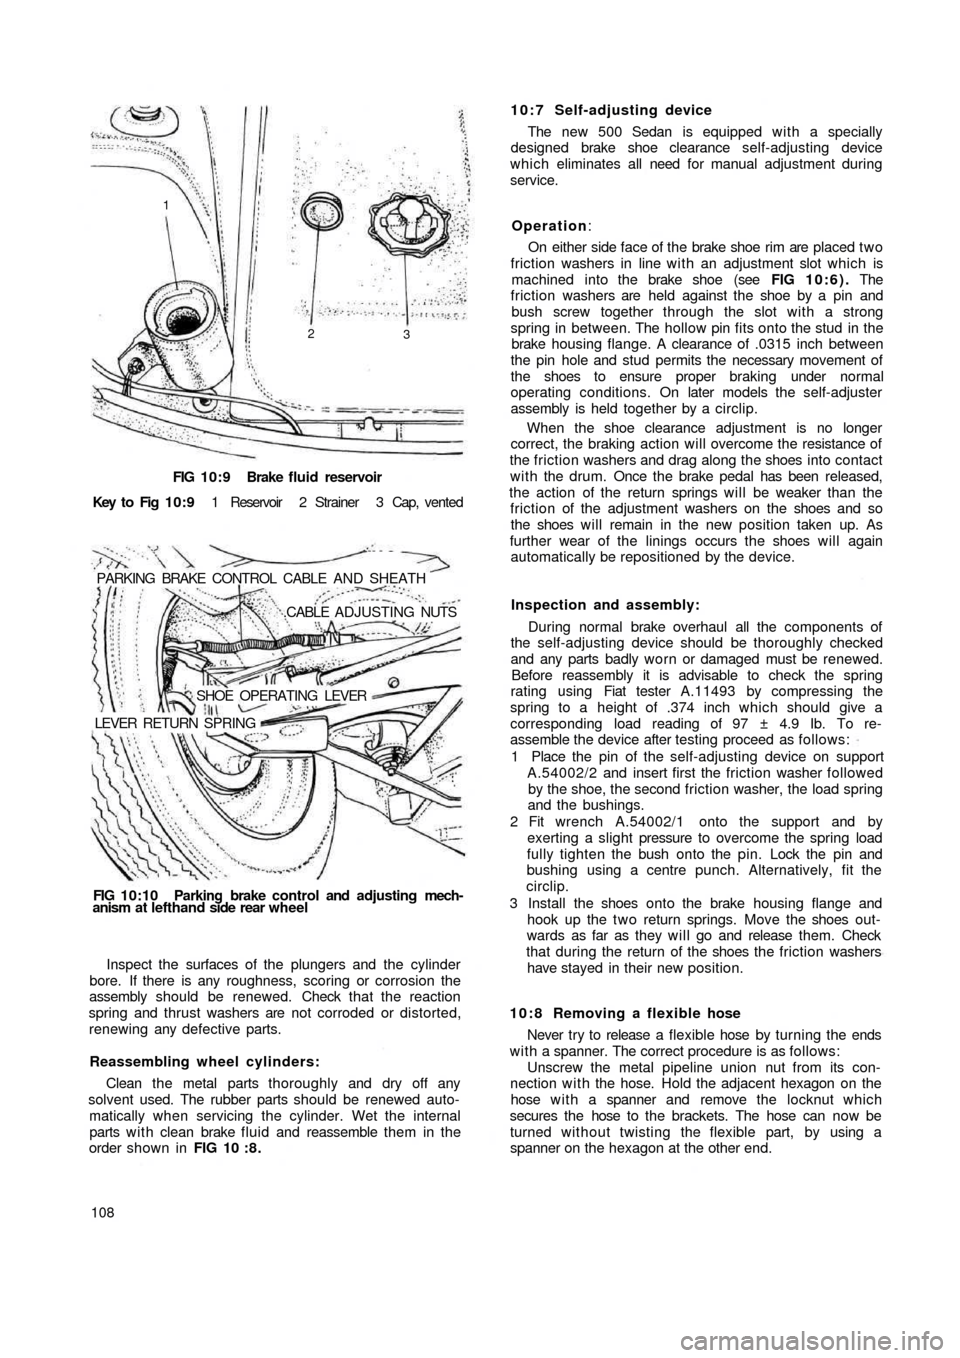 FIAT 500 1969 1.G Workshop Manual FIG 10:9 Brake  fluid reservoir
Key  to  Fig  1 0 : 9 1  Reservoir  2  Strainer  3  Cap,  vented
PARKING  BRAKE  CONTROL  CABLE  AND  SHEATH
.CABLE  ADJUSTING NUTS
SHOE  OPERATING  LEVER
LEVER  RETURN